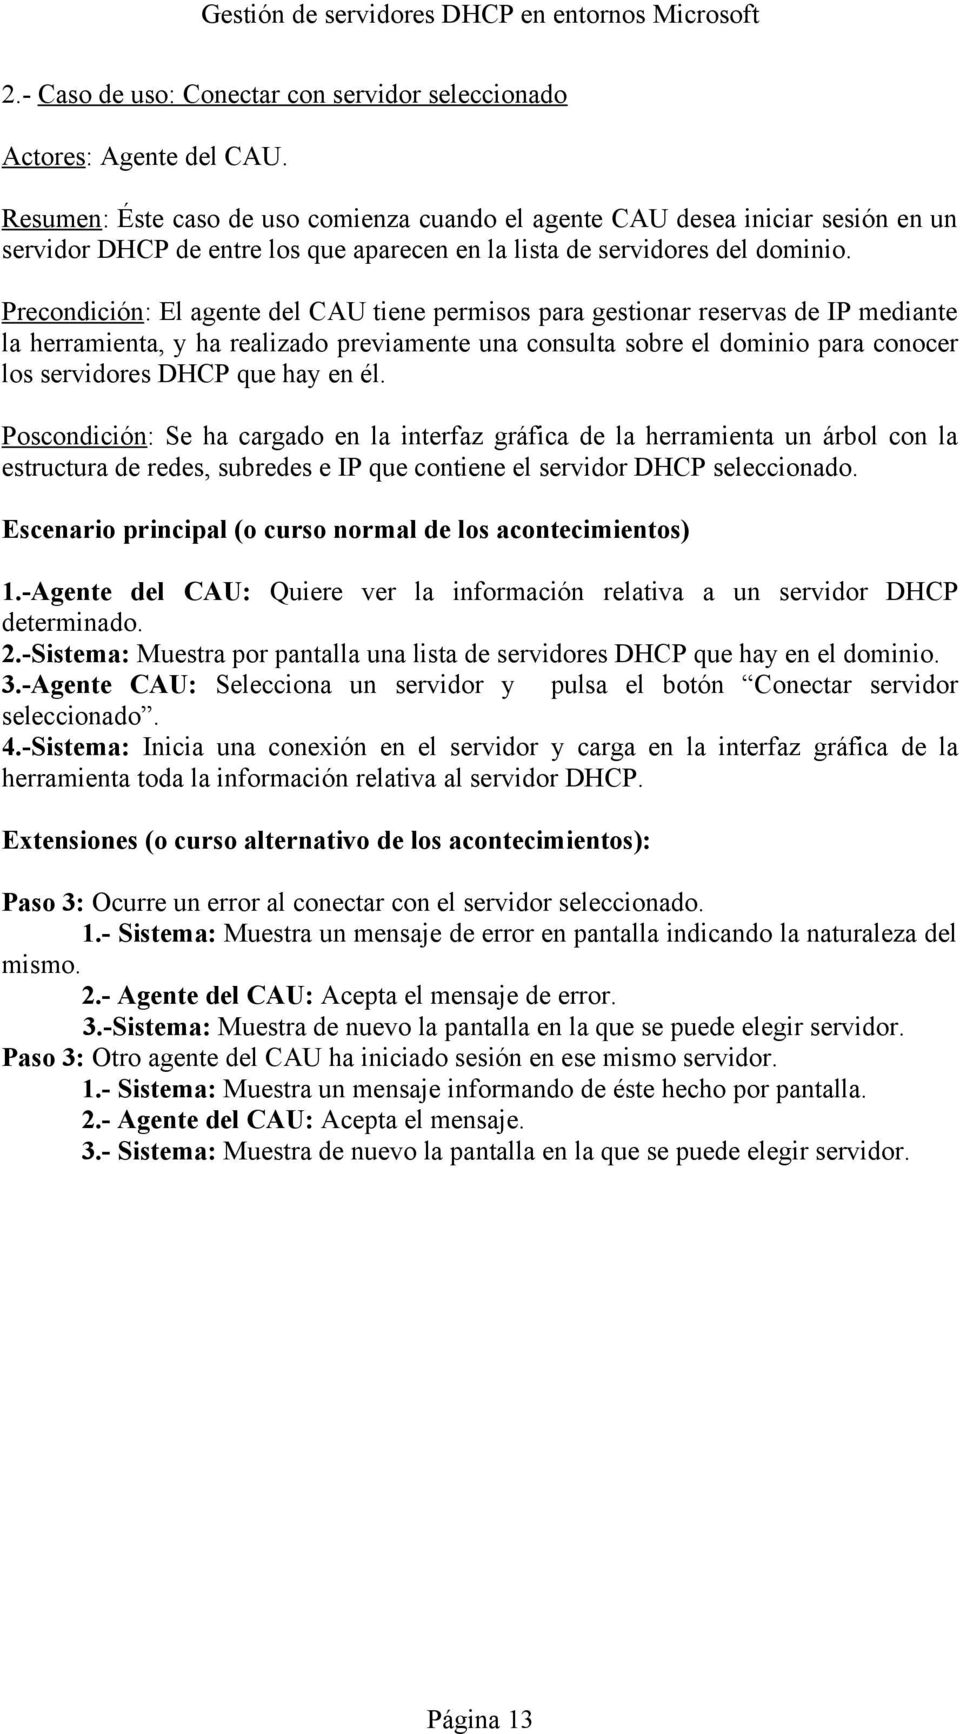 Precondición: El agente del CAU tiene permisos para gestionar reservas de IP mediante la herramienta, y ha realizado previamente una consulta sobre el dominio para conocer los servidores DHCP que hay